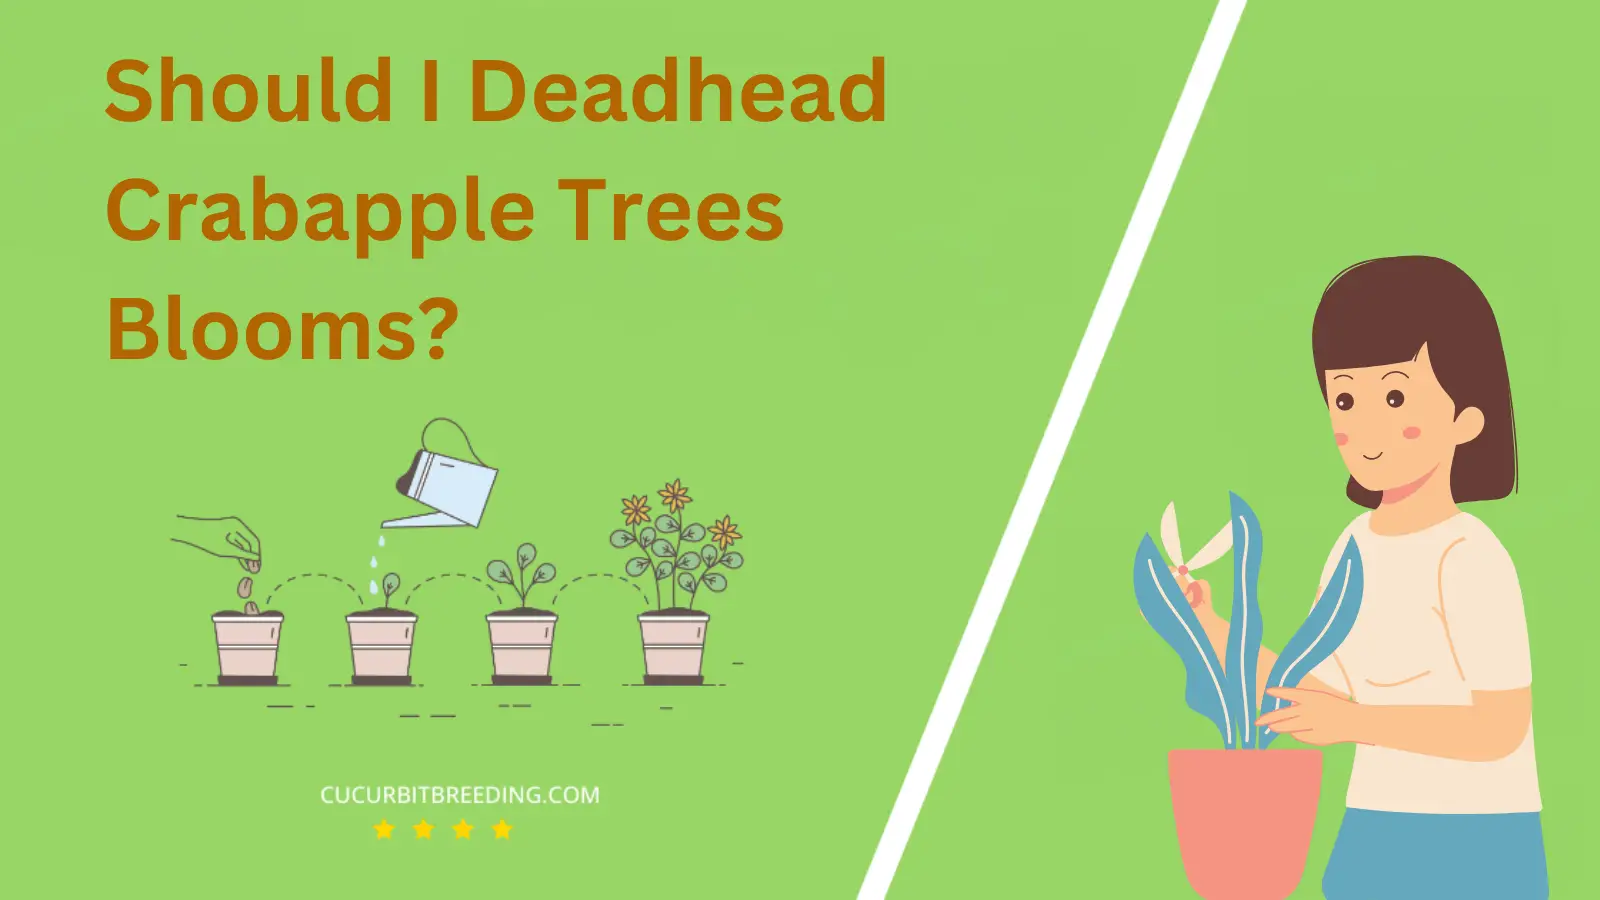 Should I Deadhead Crabapple Trees Blooms?